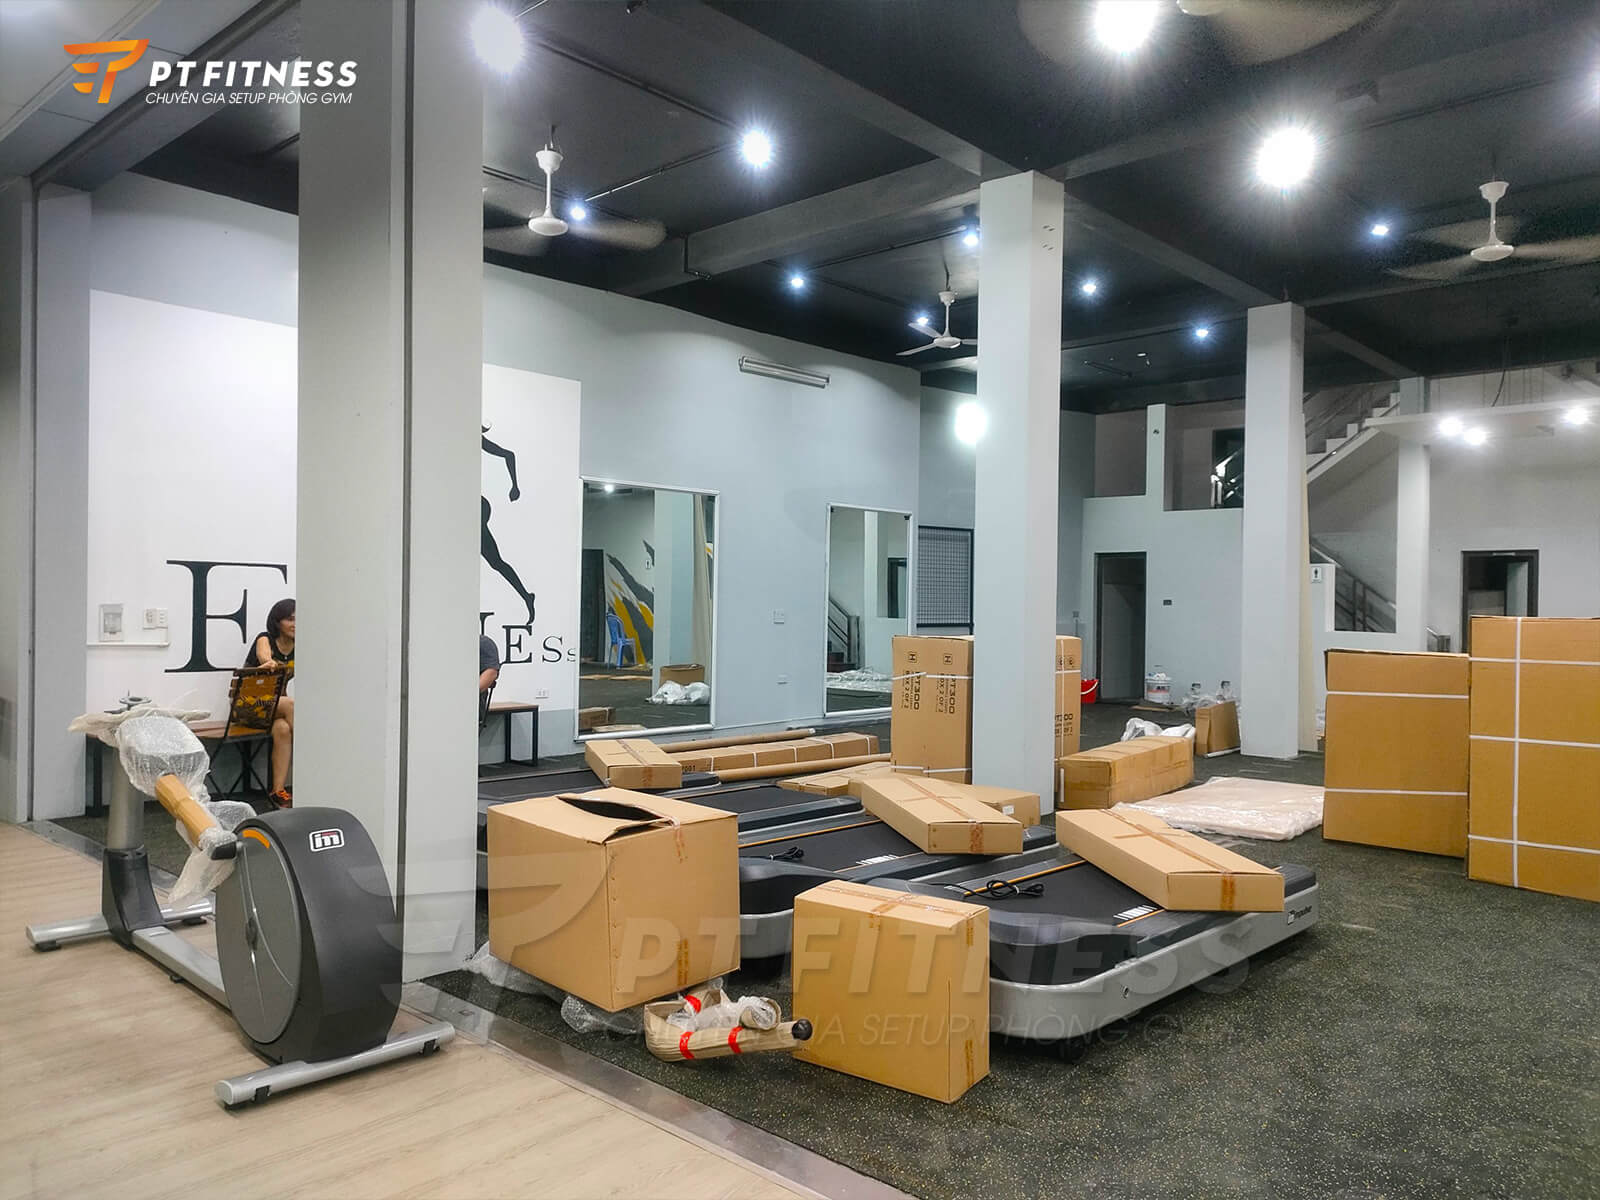 Khâu lắp đặt phòng gym kinh doanh thương mại The Fitness tại Uông Bí - Quảng Ninh